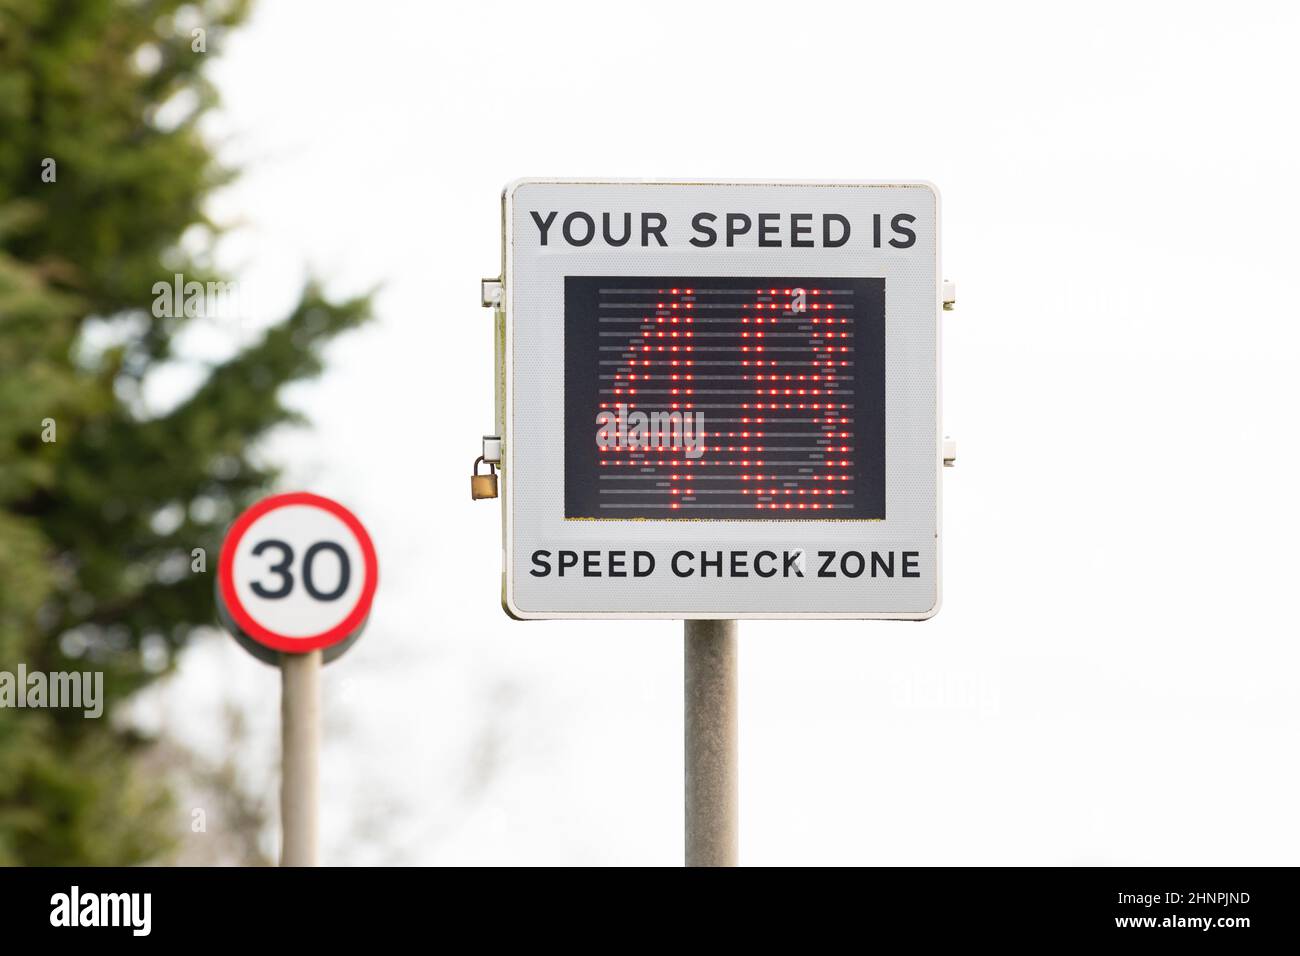 Vitesse dans 30mph zones - signal de l'indicateur de vitesse activé par le véhicule indiquant une vitesse de 48mph dans 30mph zones - Angleterre, Royaume-Uni Banque D'Images